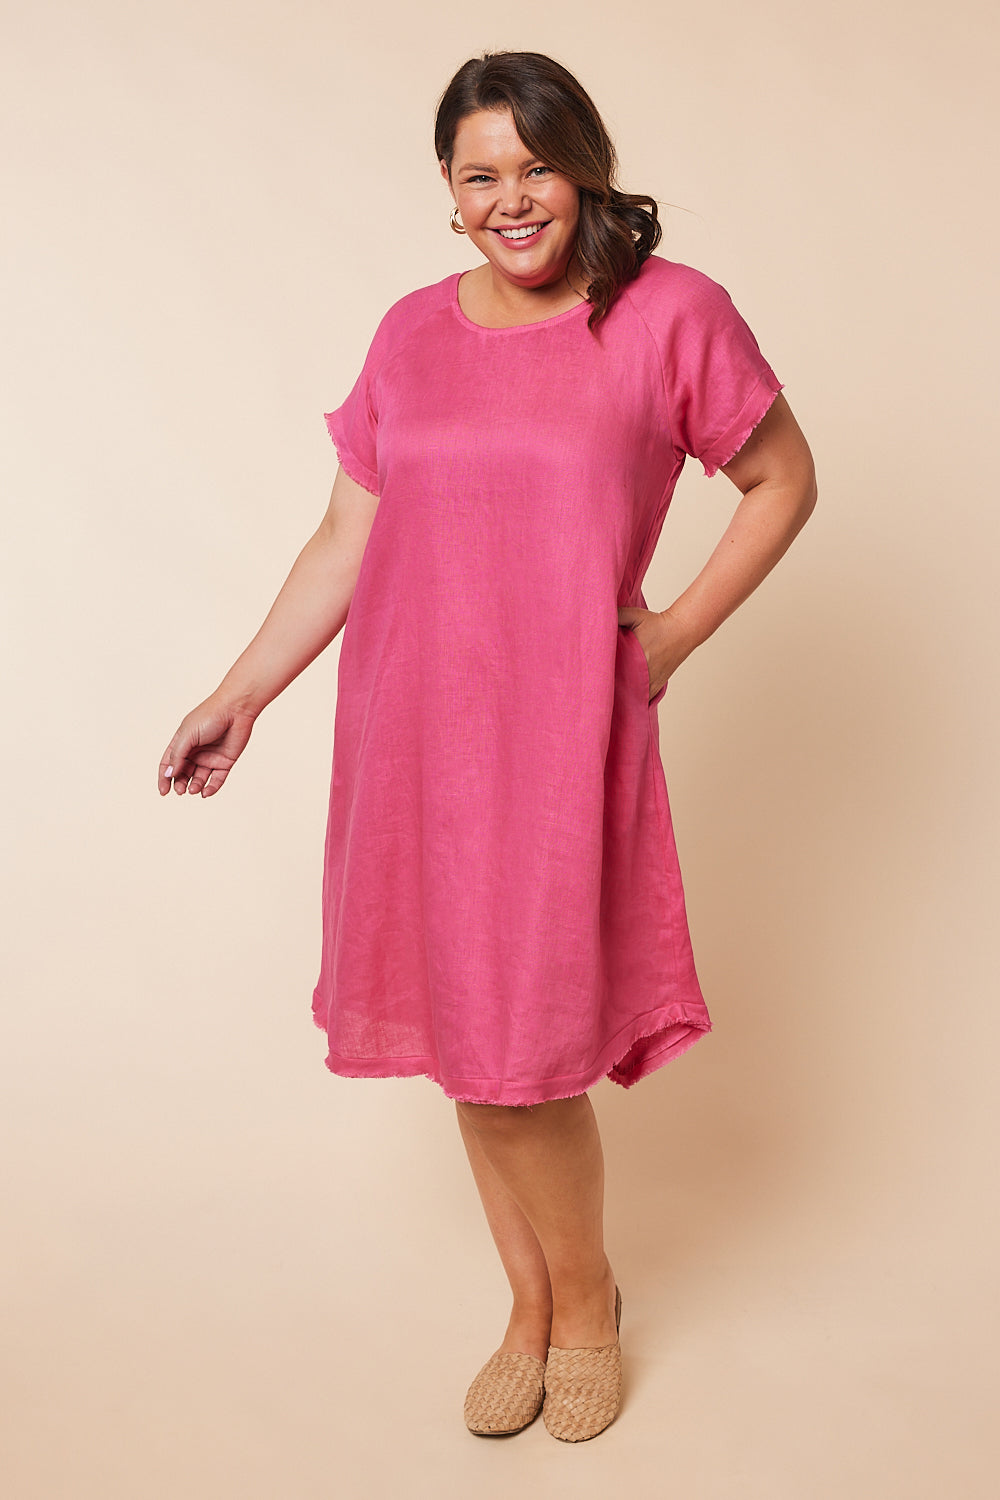 Reanna Linen Shift Dress in Hot Pink